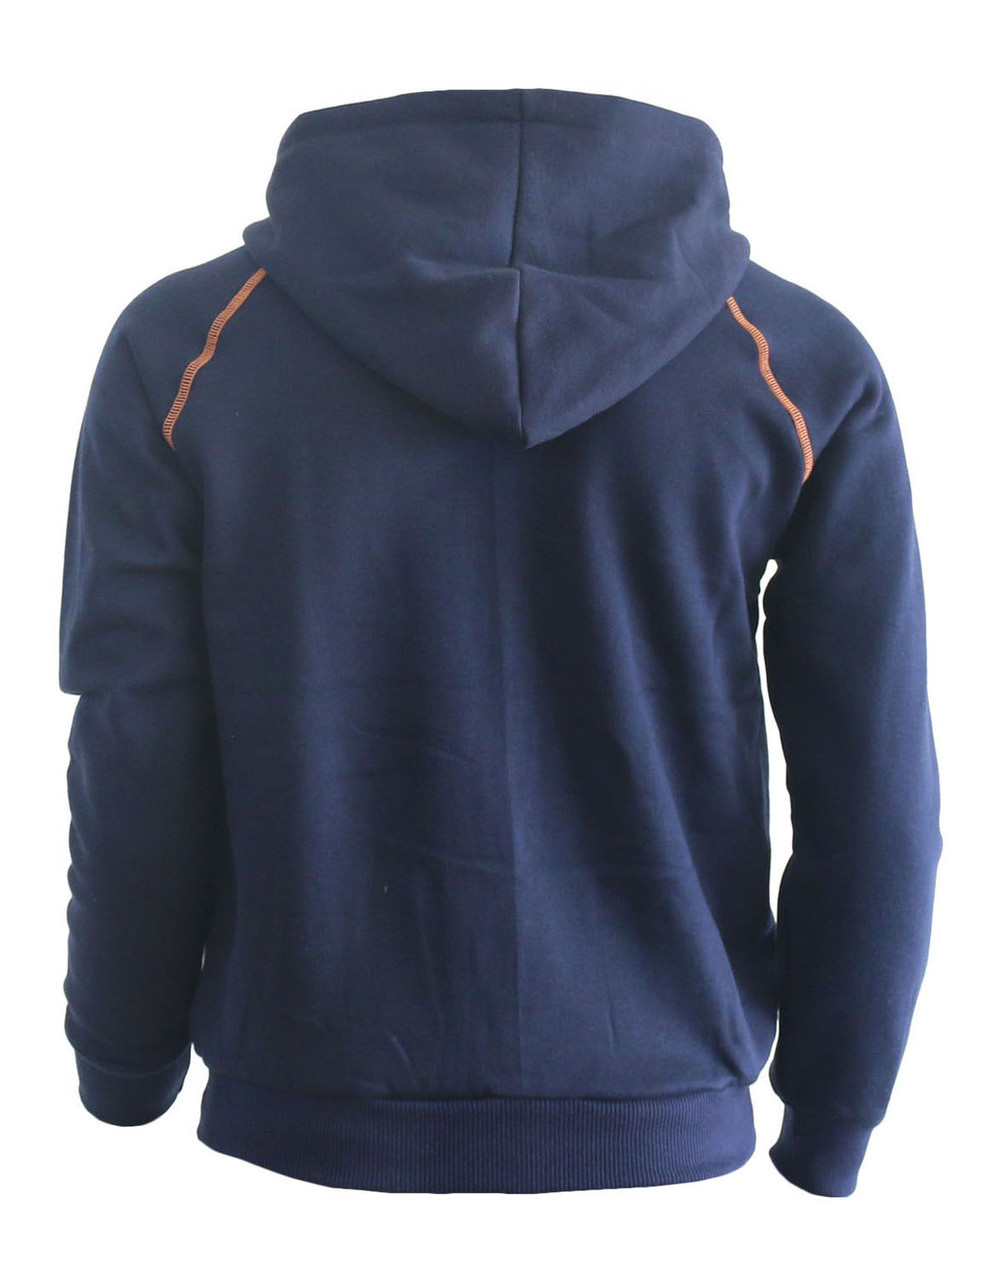 Casual warm sweat zip-Hoodie jumper of orange color hoodie zip-up